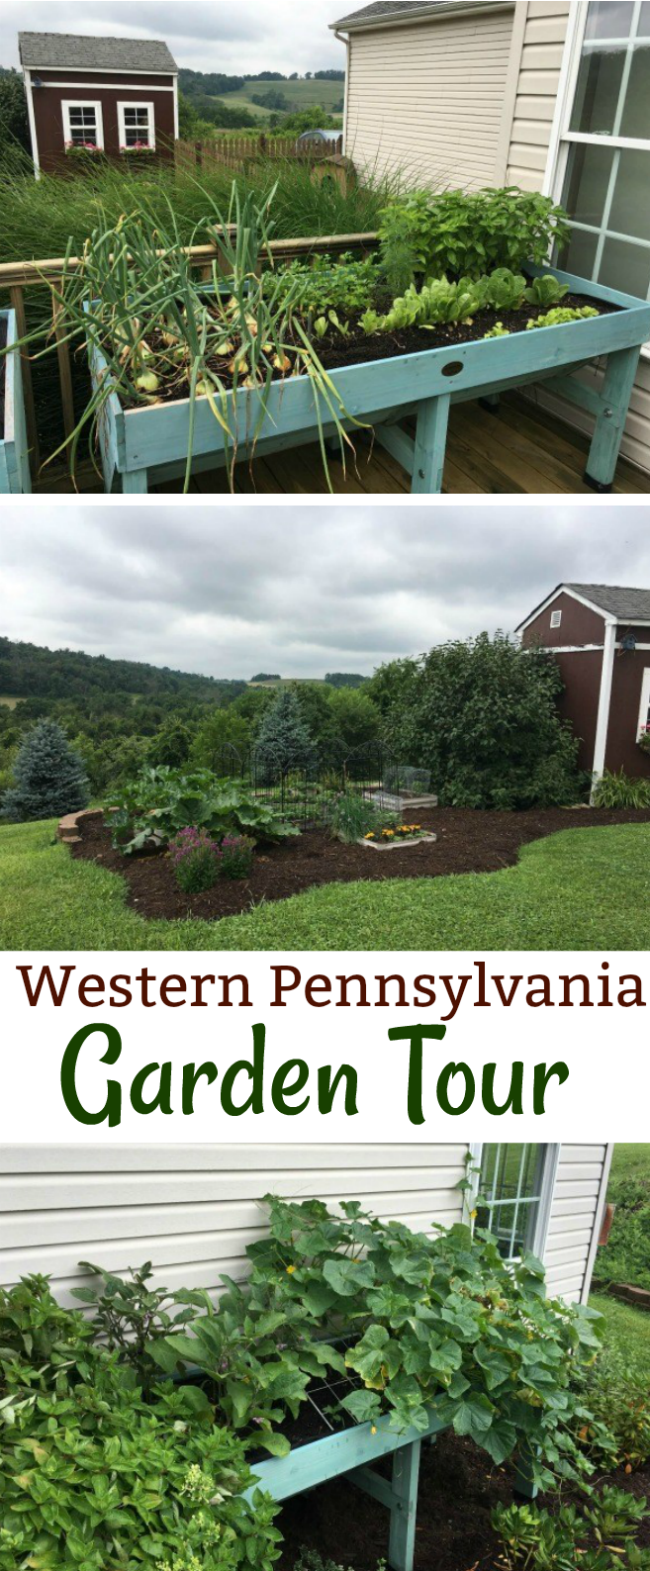 Mavis Mail – Tina From Western Pennsylvania Sends in Her Garden Photos